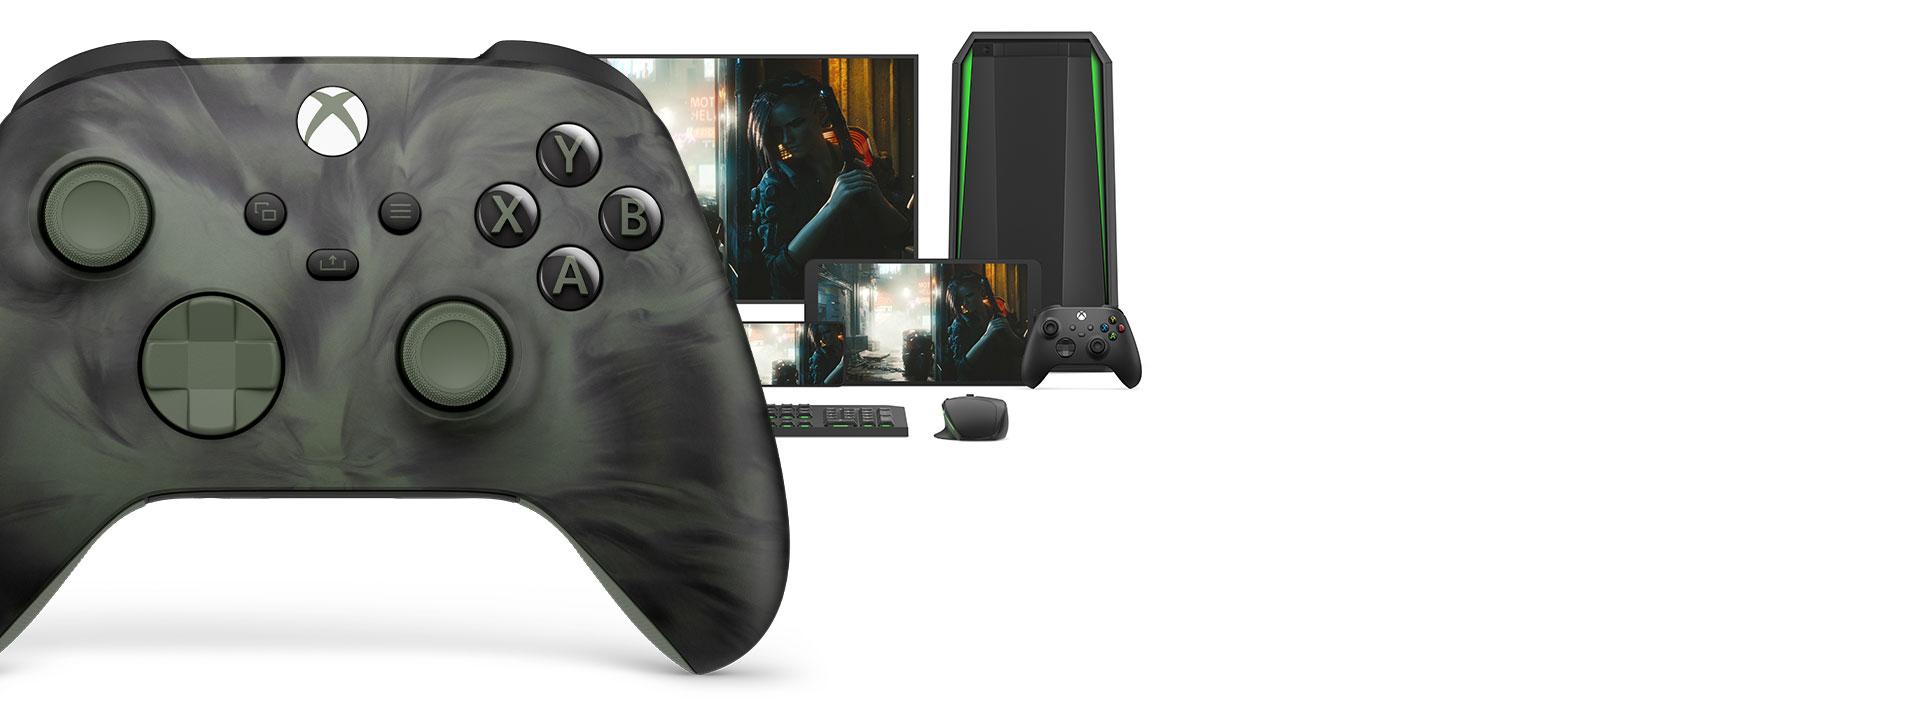 Vista anteriore del lato destro del Controller Wireless per Xbox - Edizione speciale Nocturnal Vapor e diverse piattaforme di gioco sotto di esso